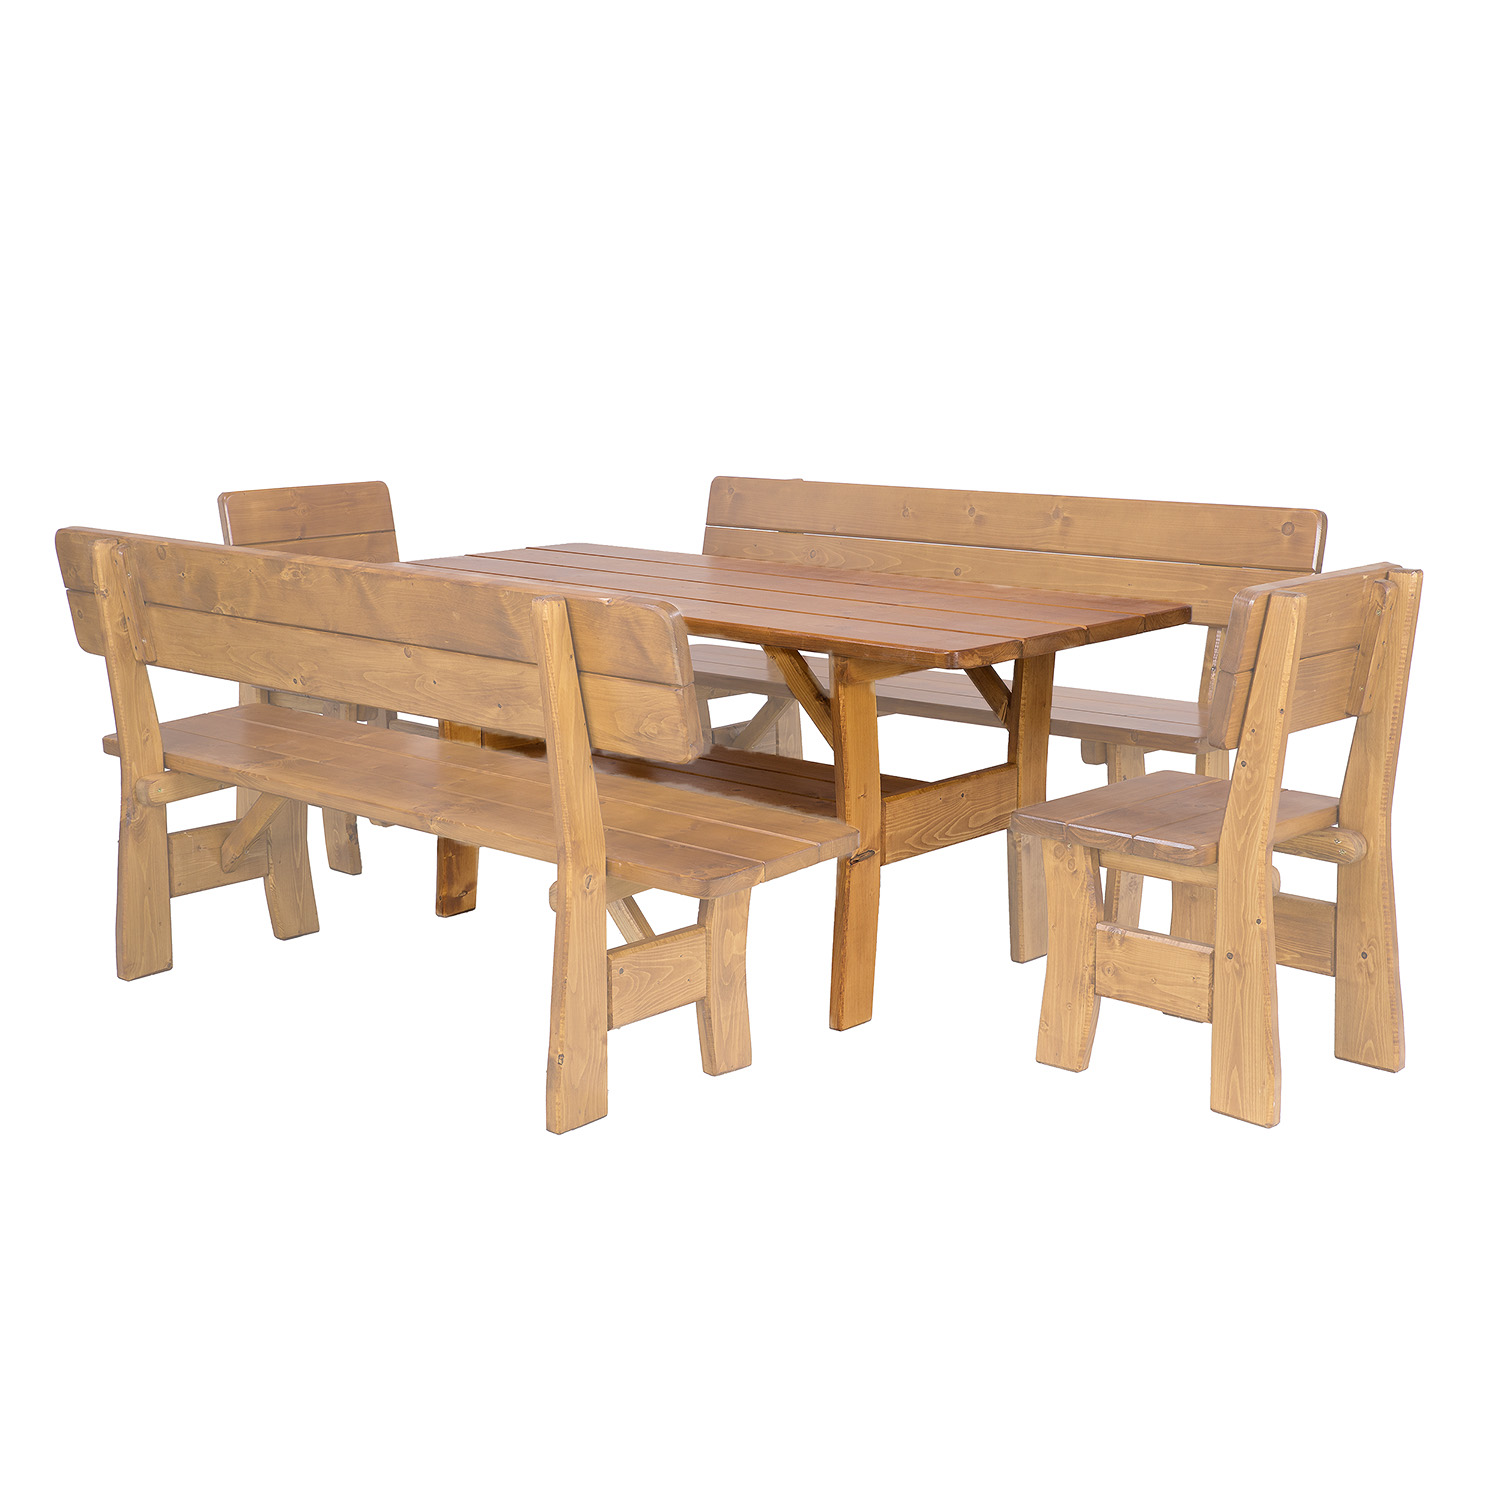 Zahradní stůl ze smrkového dřeva, lakovaný 180x81x80cm - Týk lak